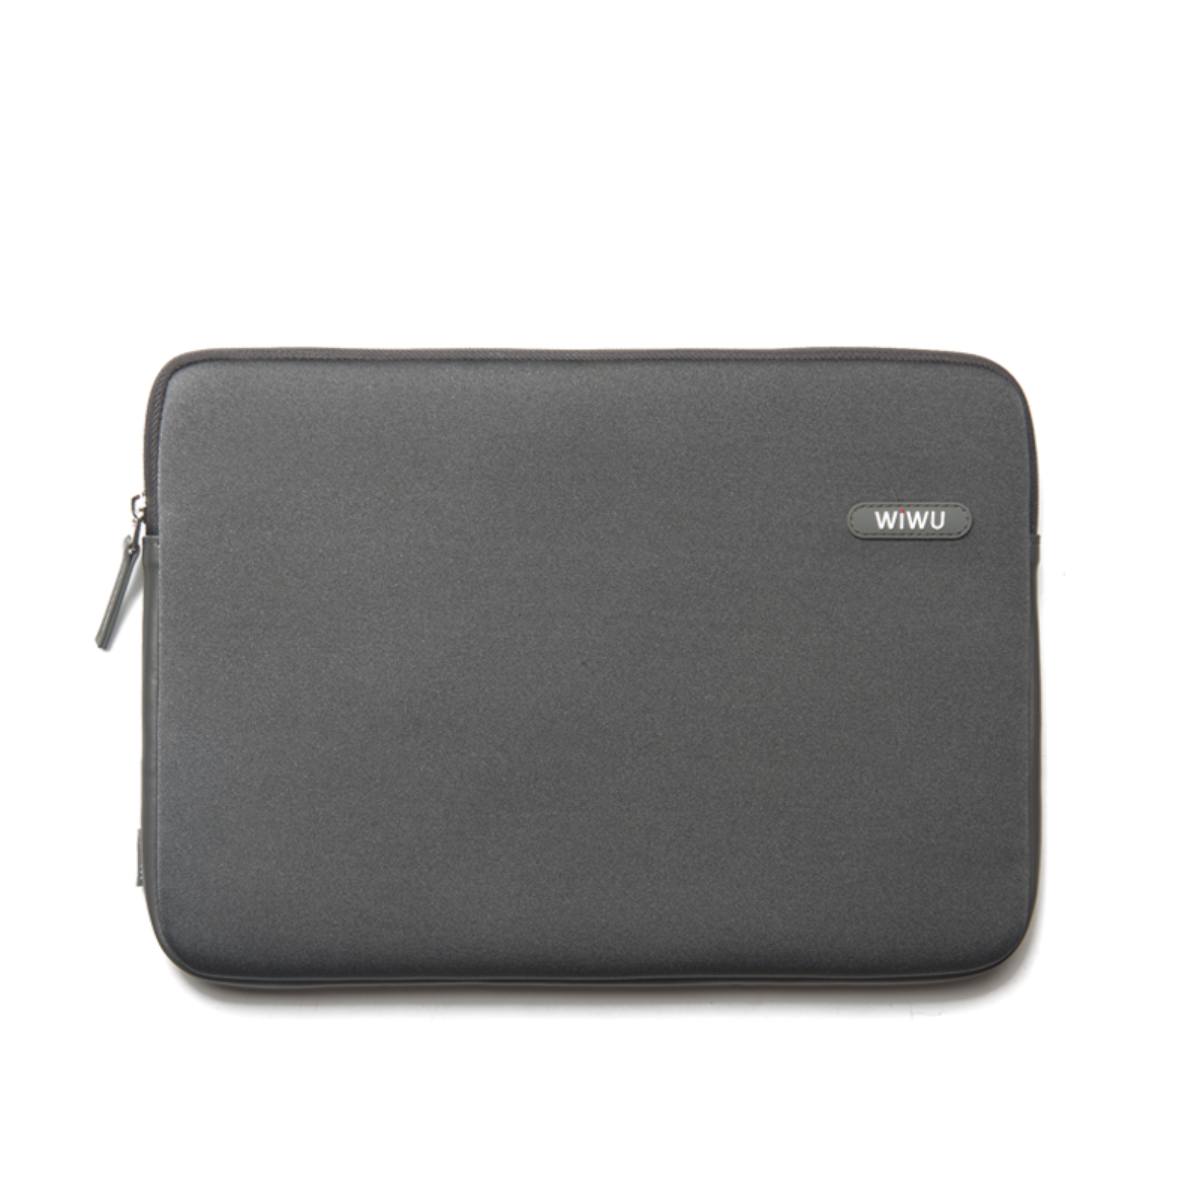 Túi Chống Sốc Cho Laptop, Macbook 15 inch Khóa YKK, Kháng Nước WIWU CLASSIC - Hàng Chính Hãng